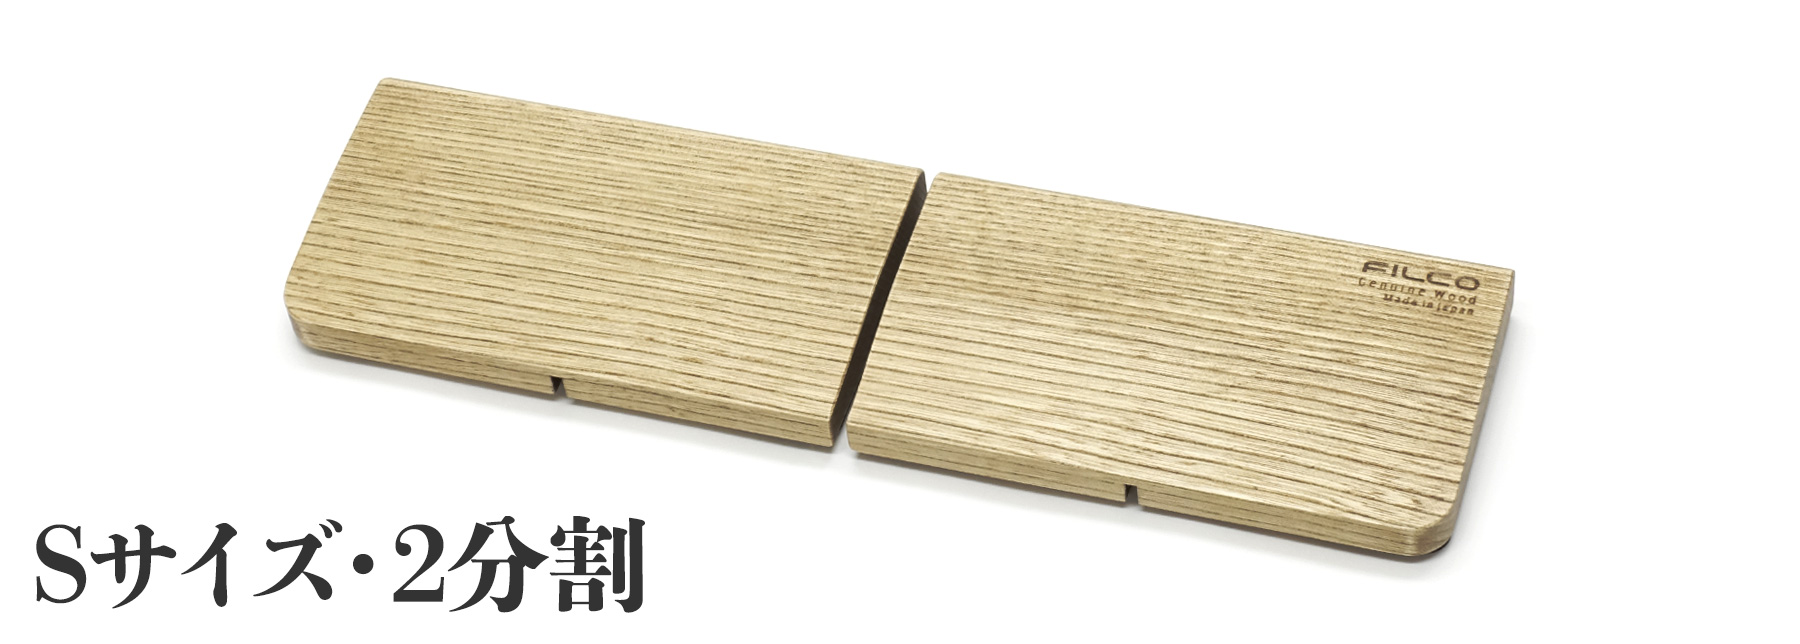 【通販限定】【北海道産天然木】FILCO Genuine Wood Wrist Rest S size 分離型(2分割)